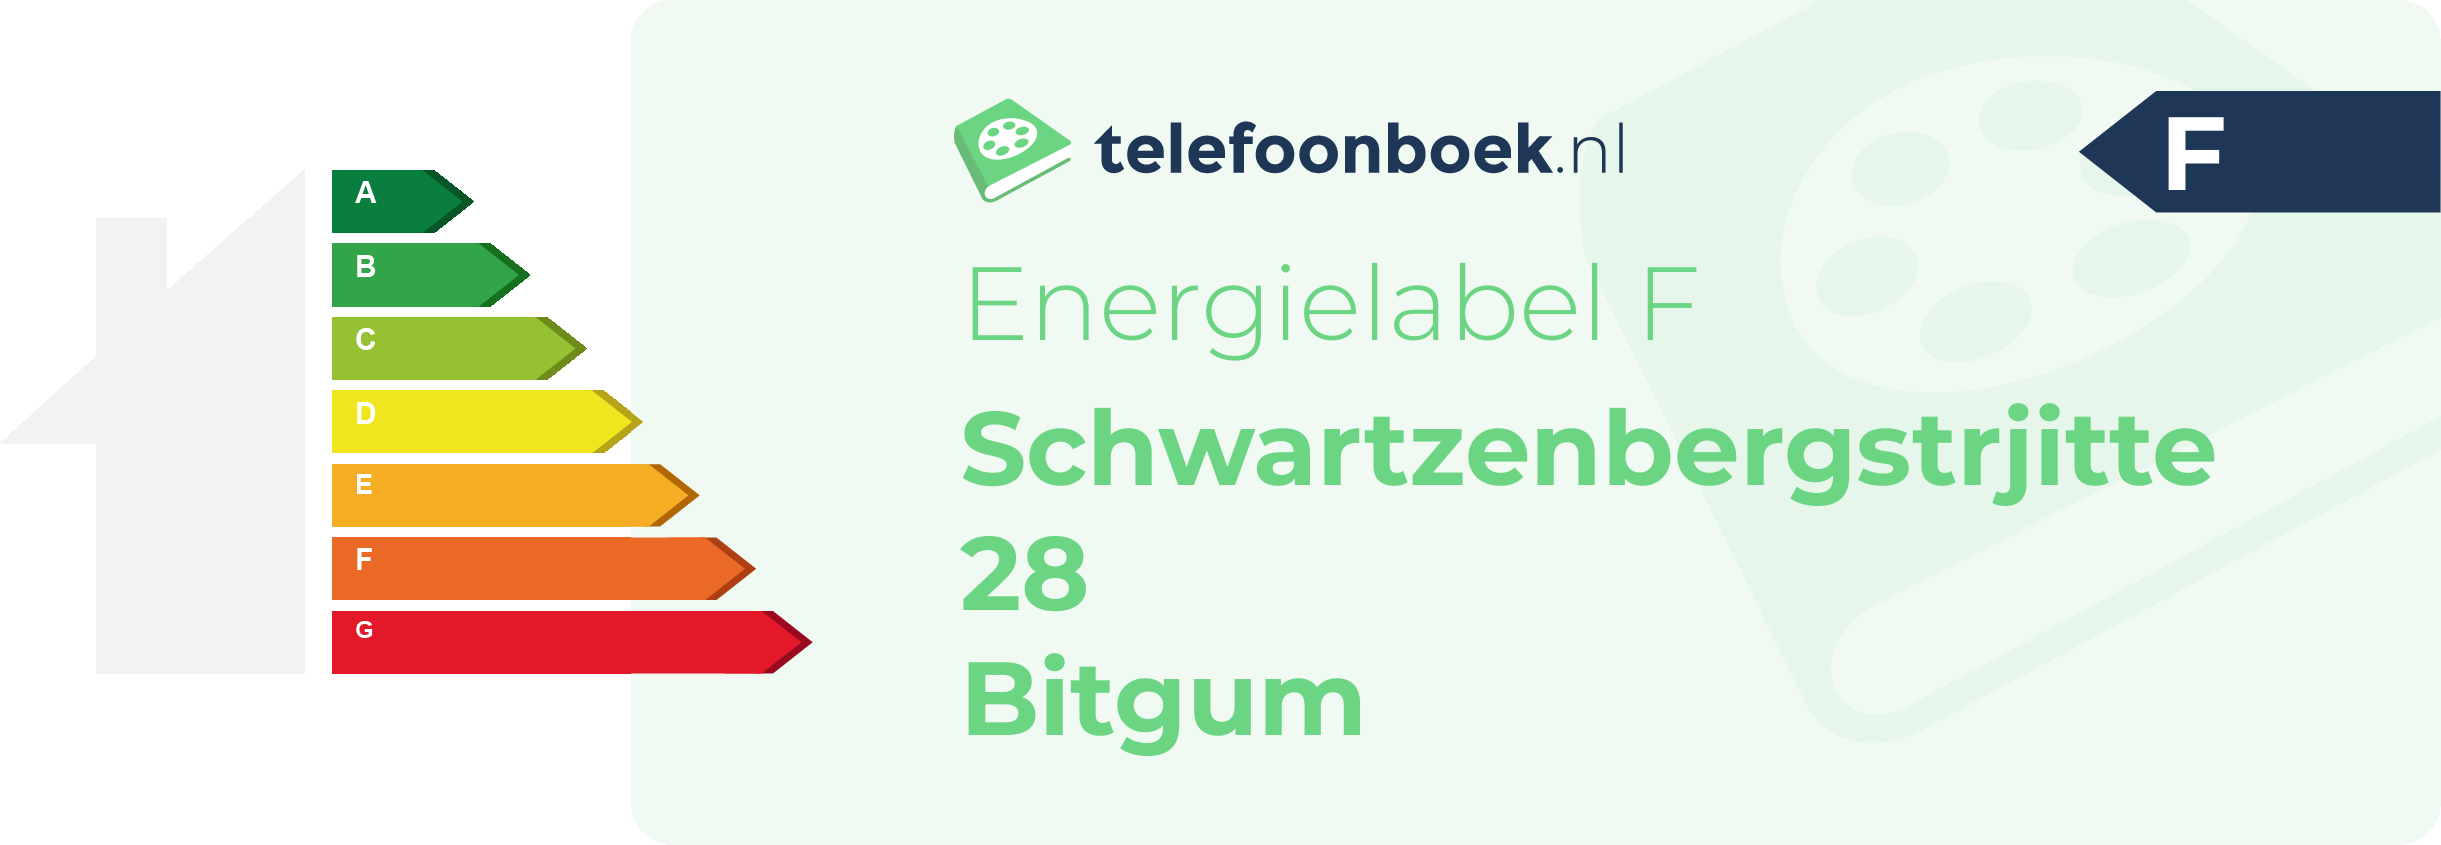 Energielabel Schwartzenbergstrjitte 28 Bitgum